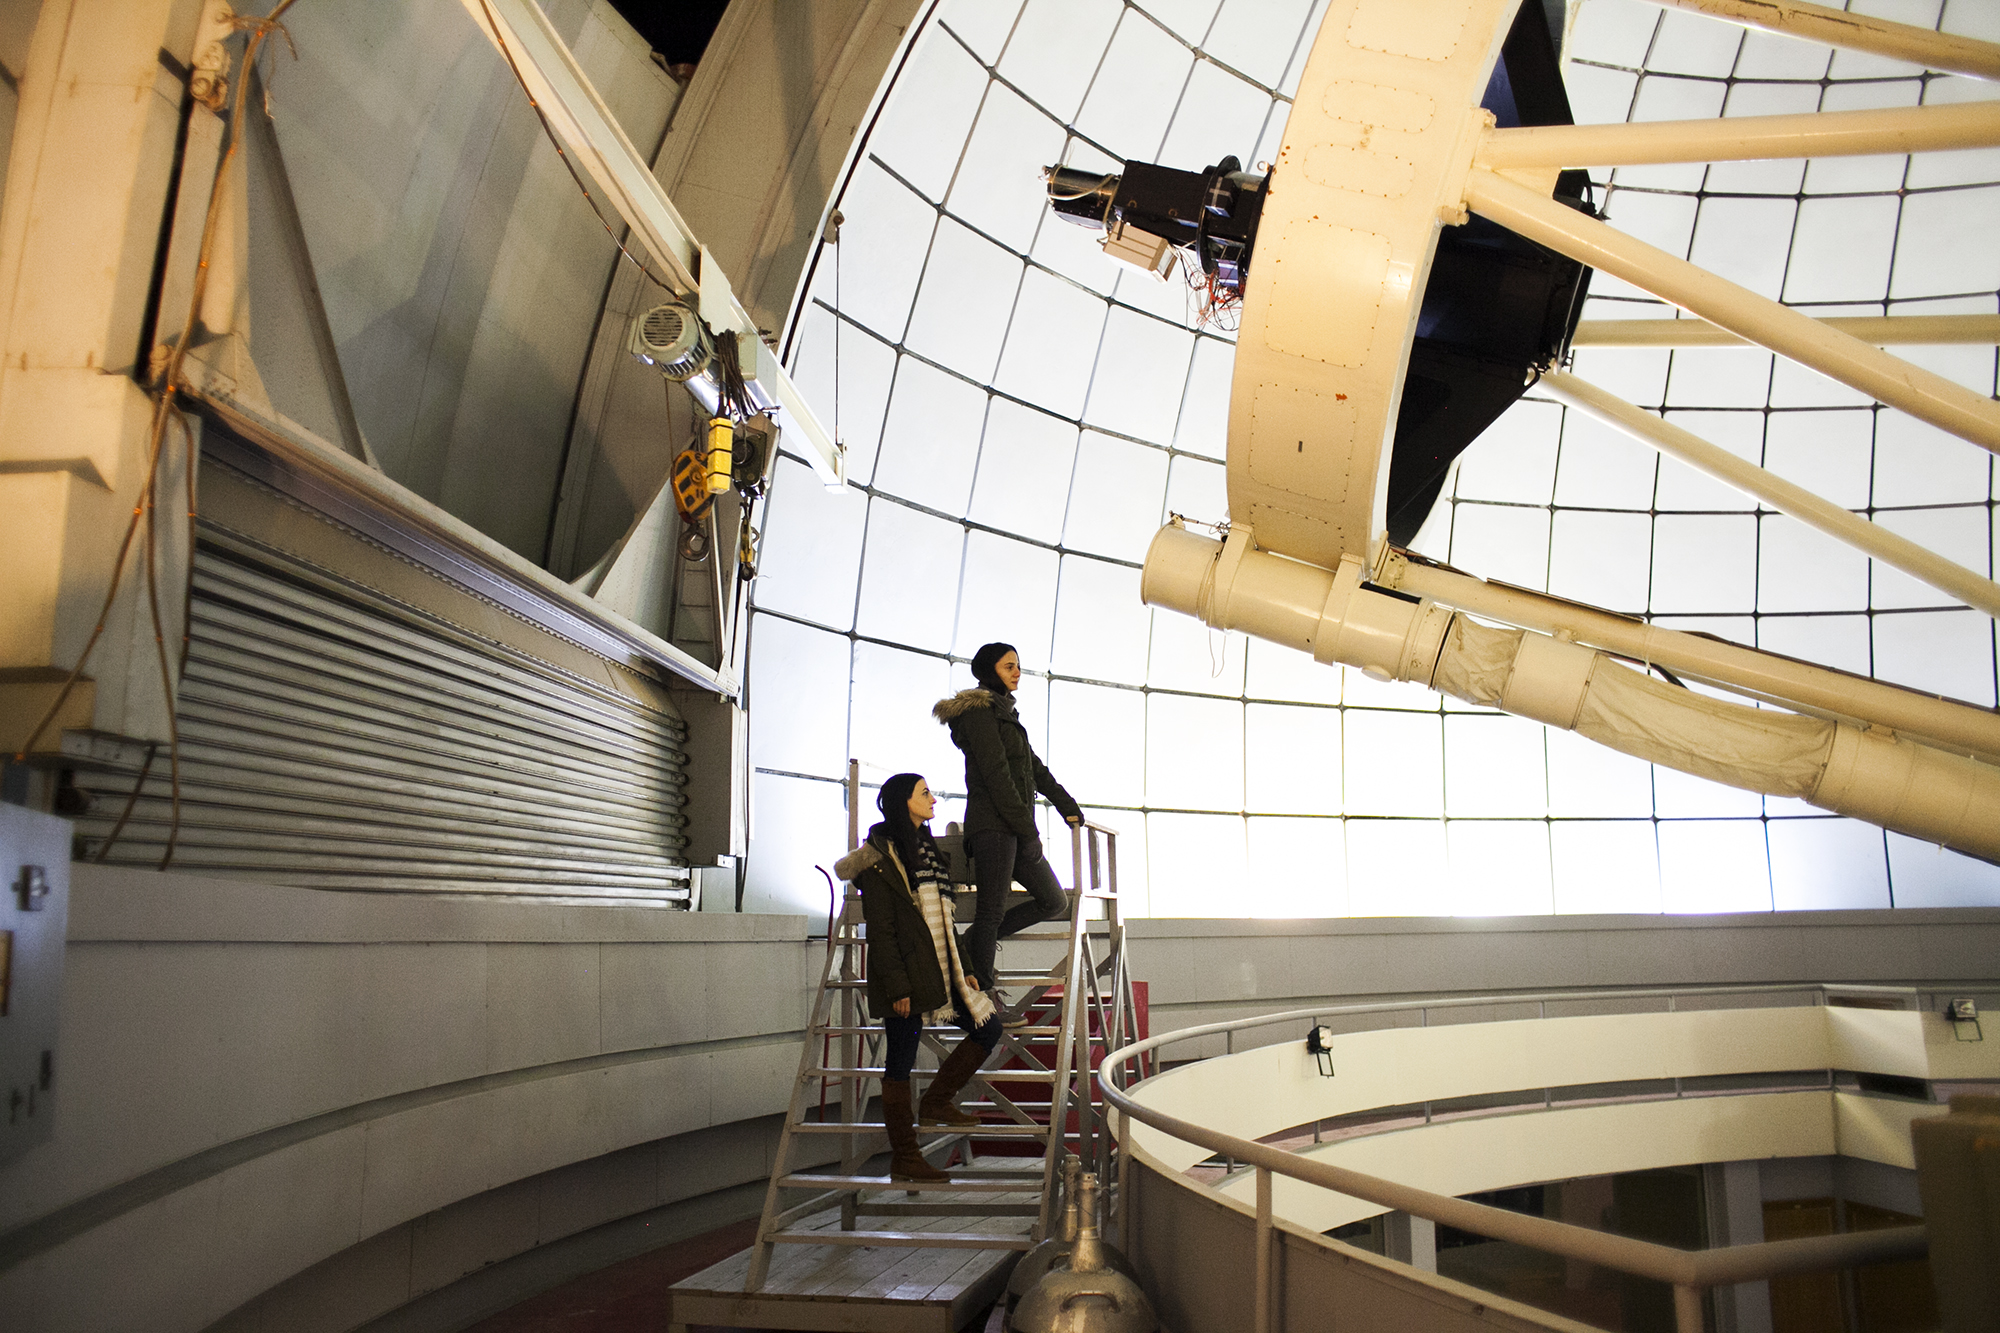 Անահիտն ու Հասմիկը` Բյուրականի աստղադիտարանի 2.6 մետրանոց դիտակի ներսում: